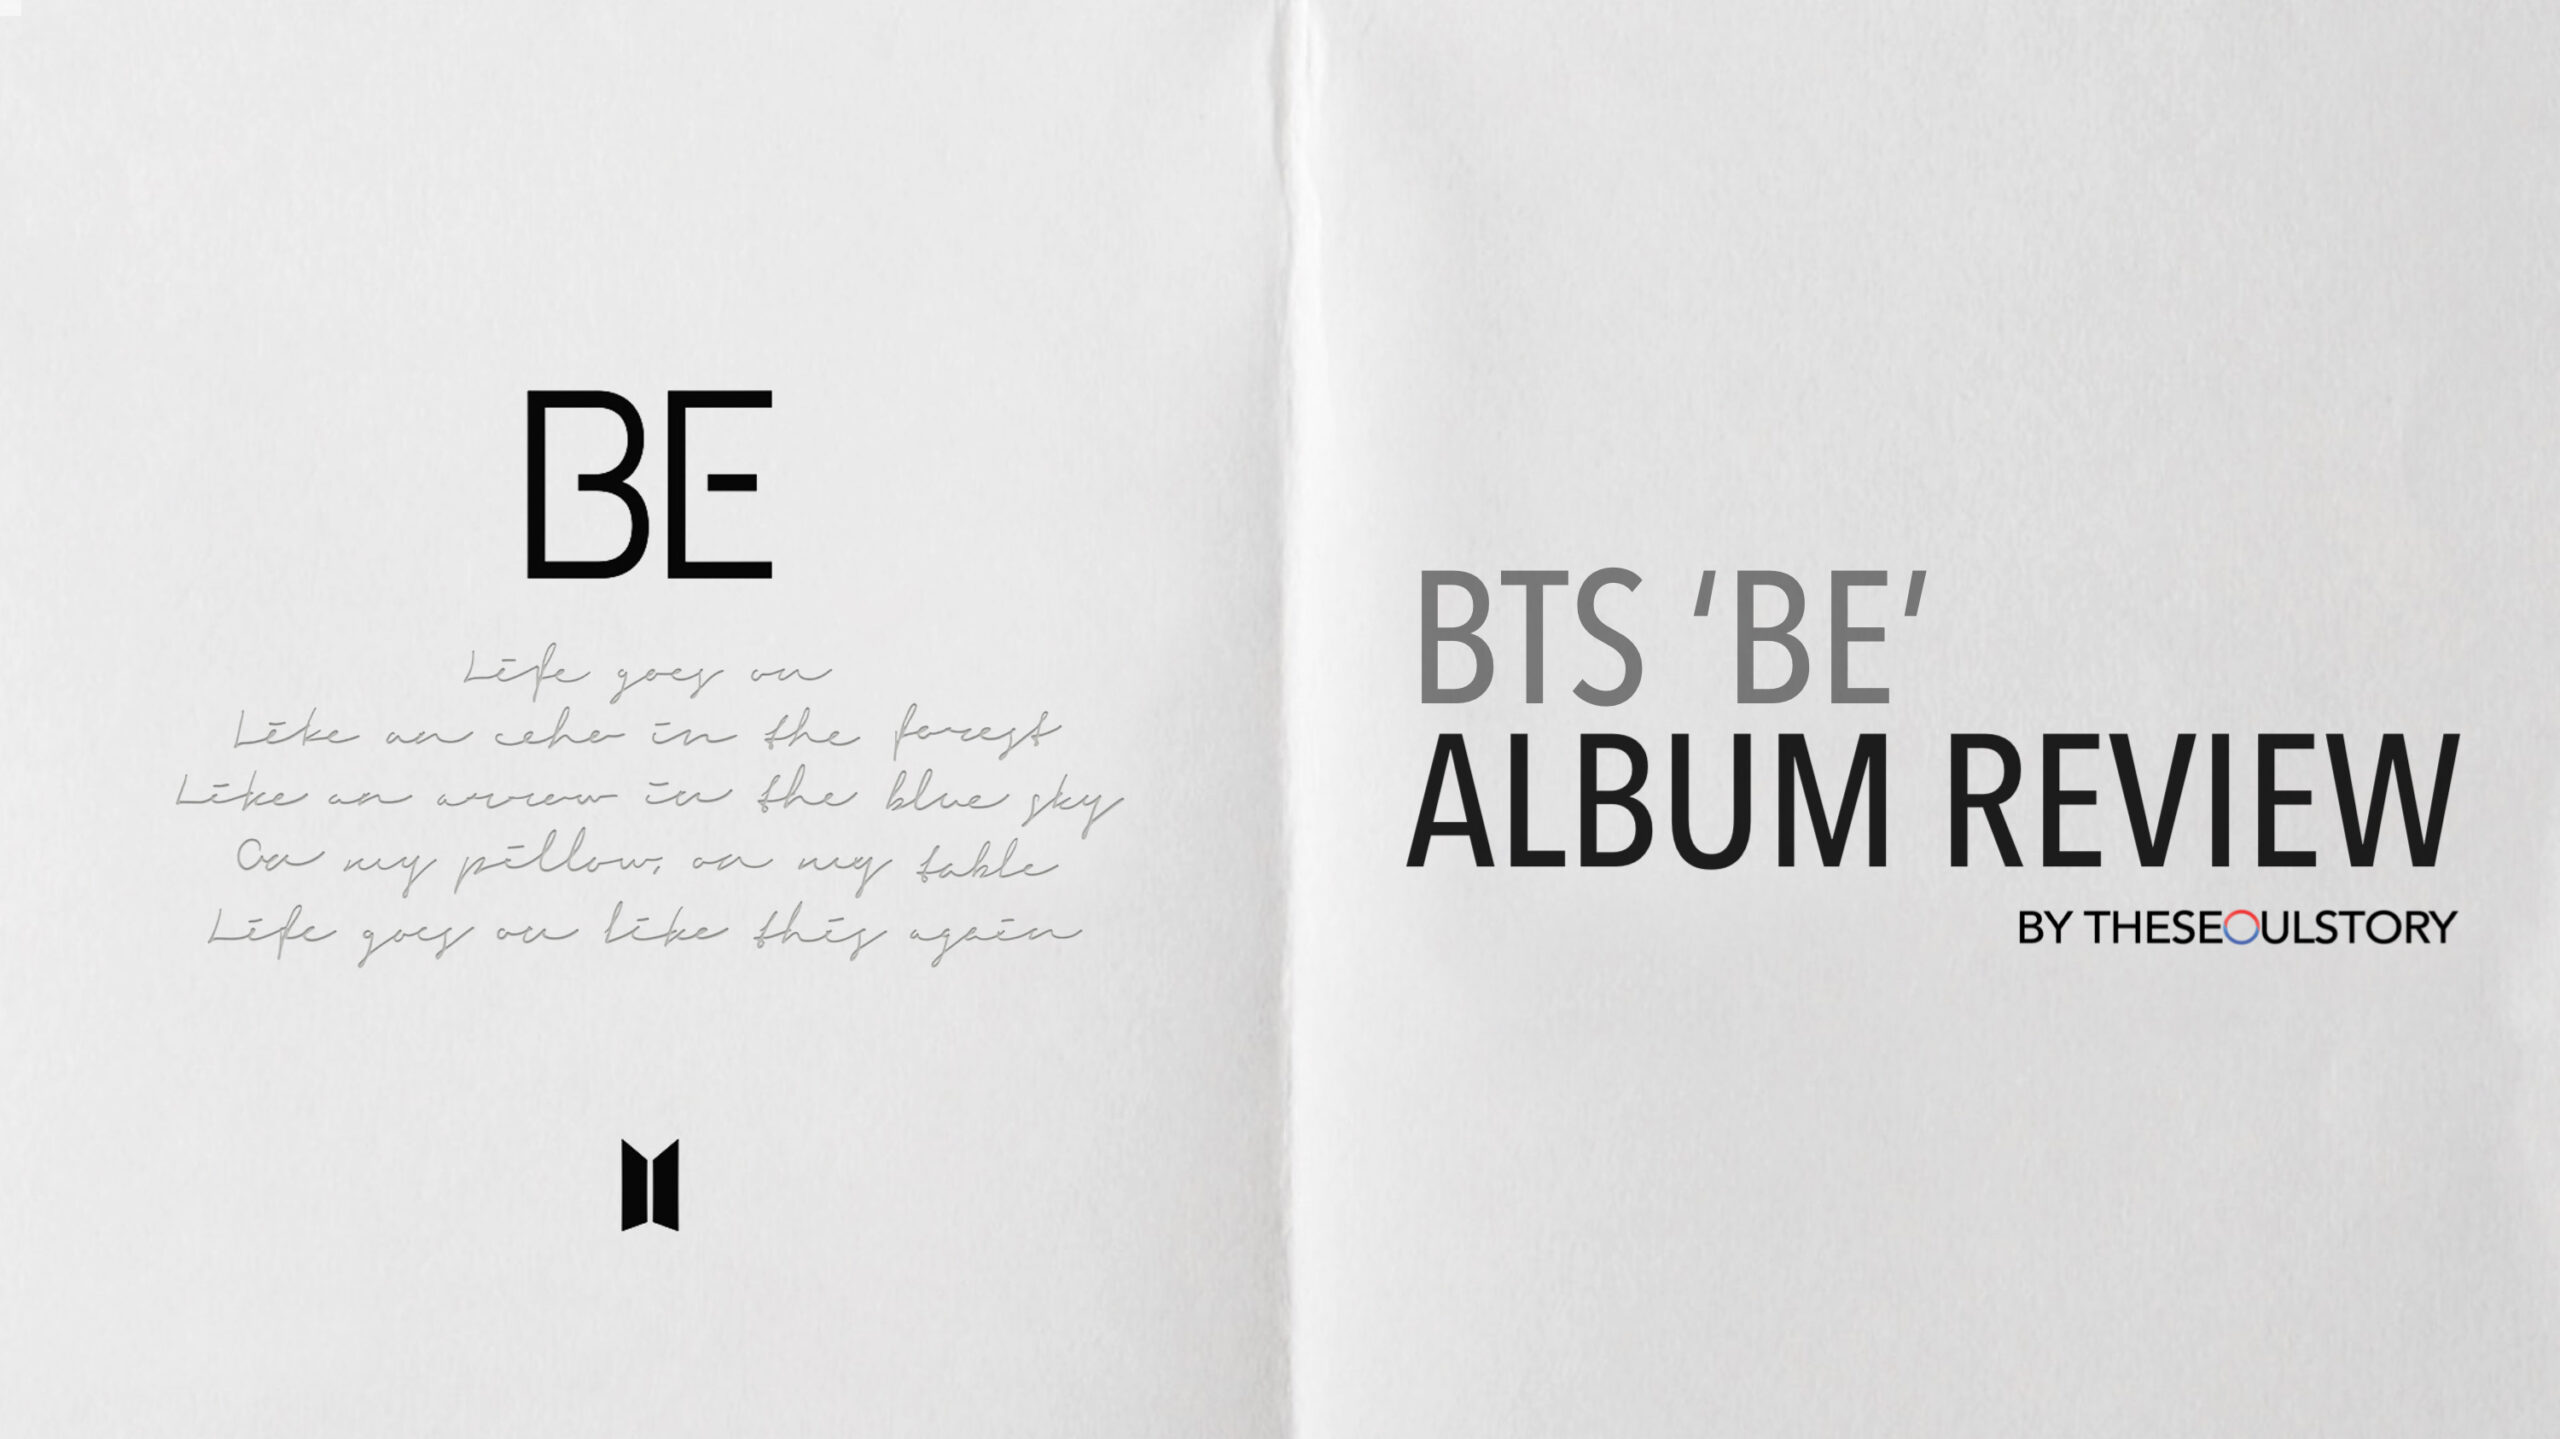 [FEATURE] BTS ‘BE’ ALBUM REVIEW